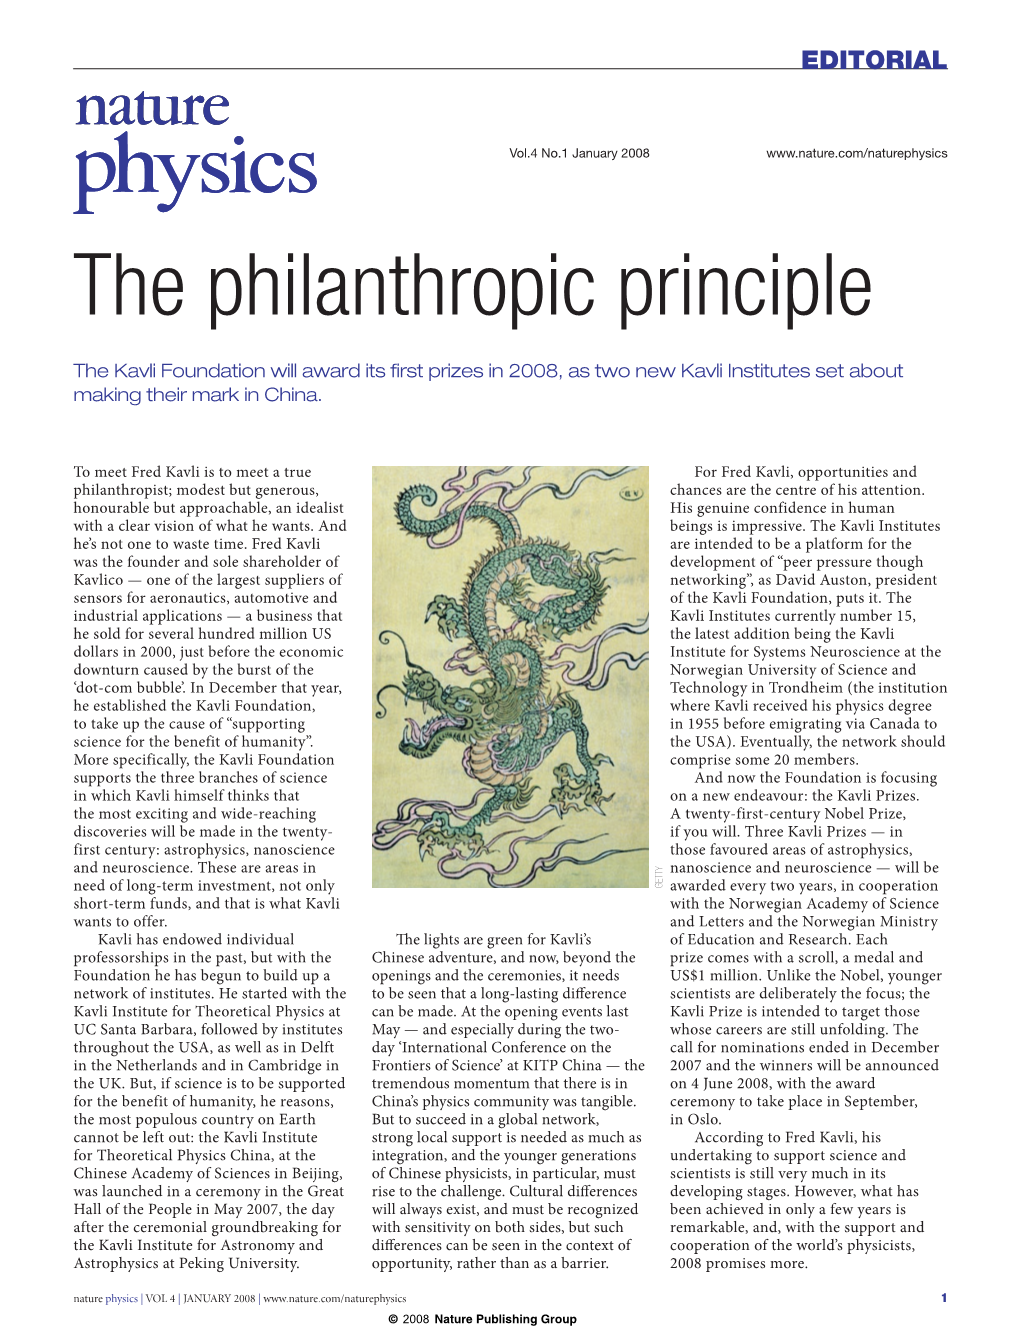 The Philanthropic Principle